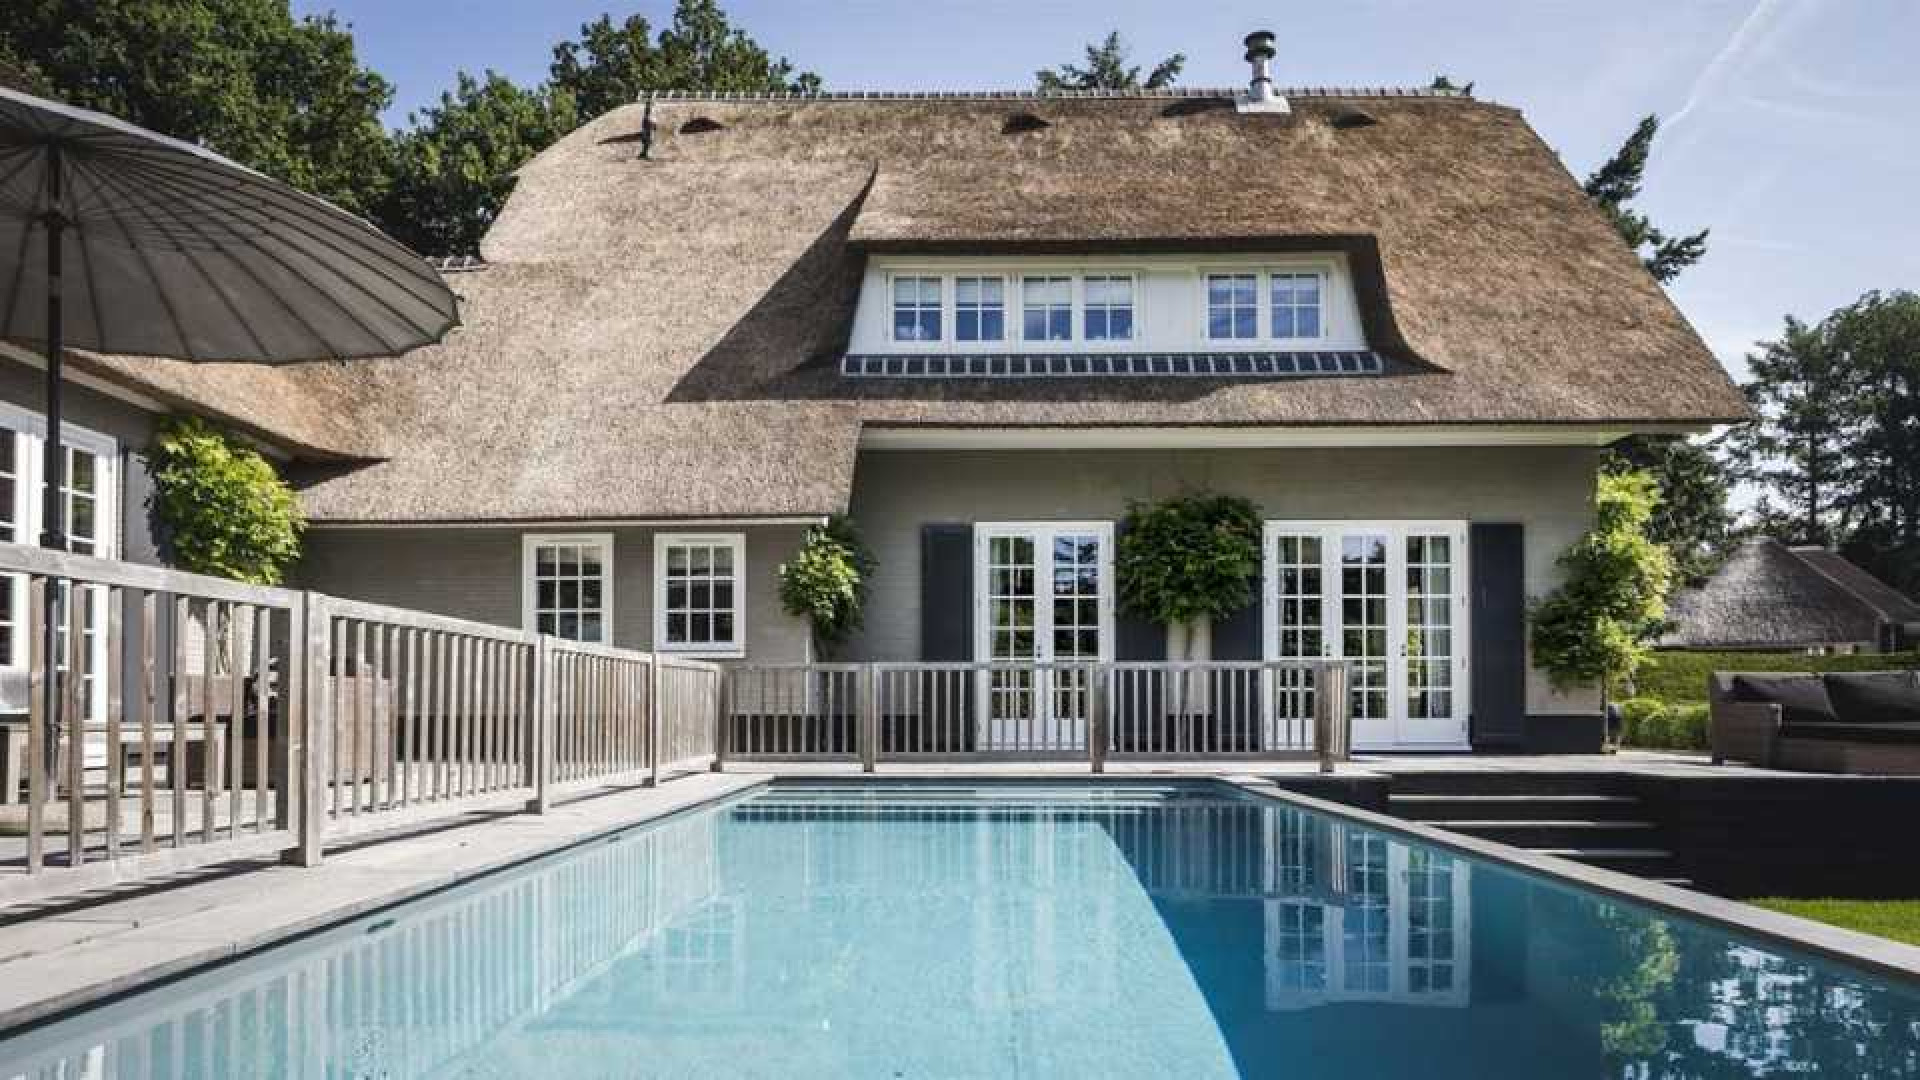 Winston en Renate Gerschtanowitz zetten hun villa met buiten zwembad te koop. Zie foto's 3